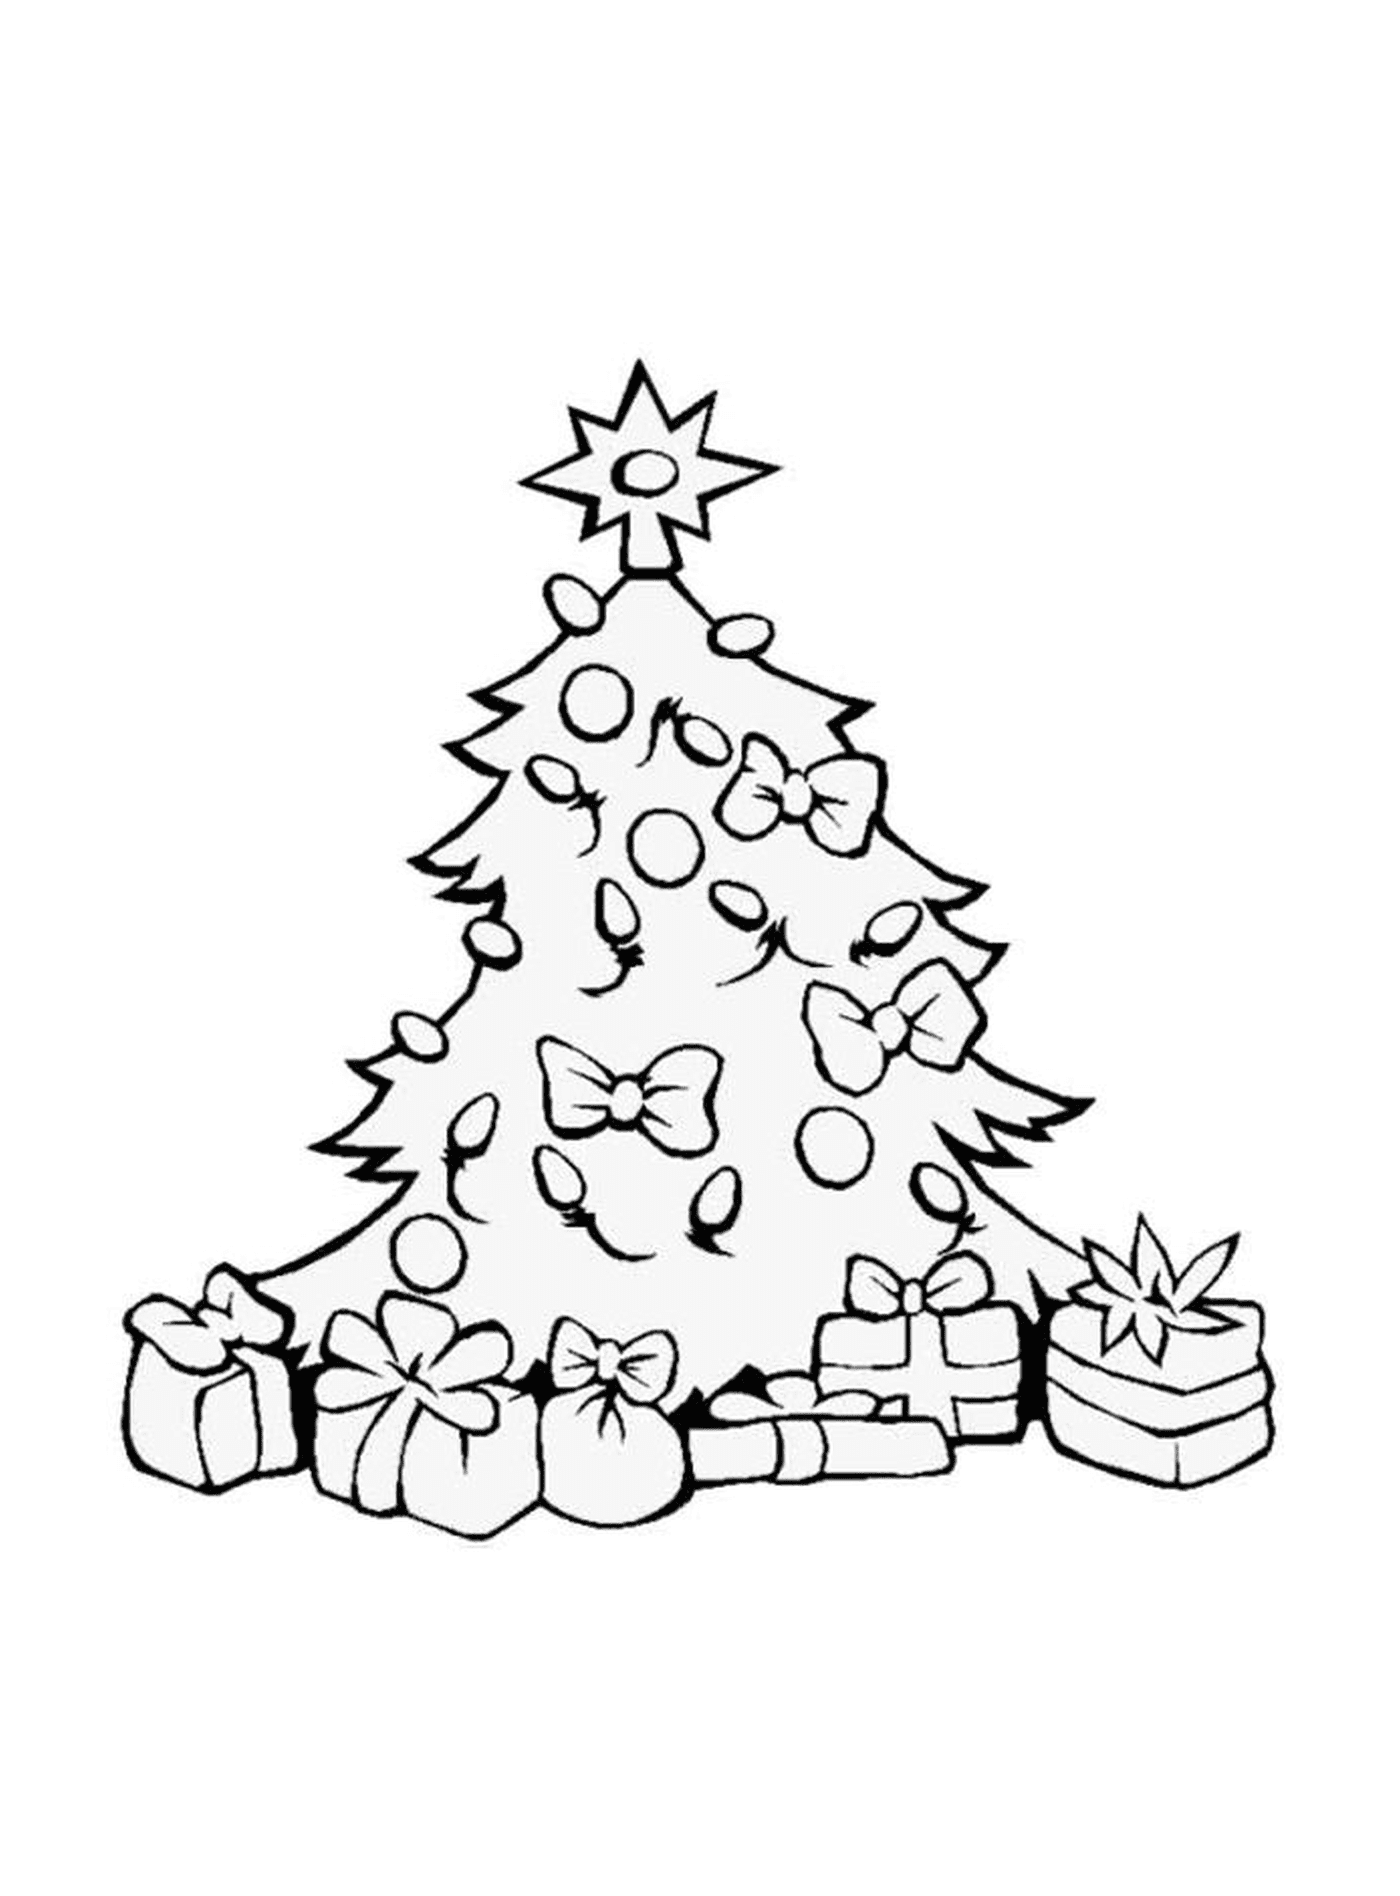  Un árbol de Navidad con muchos regalos alrededor 